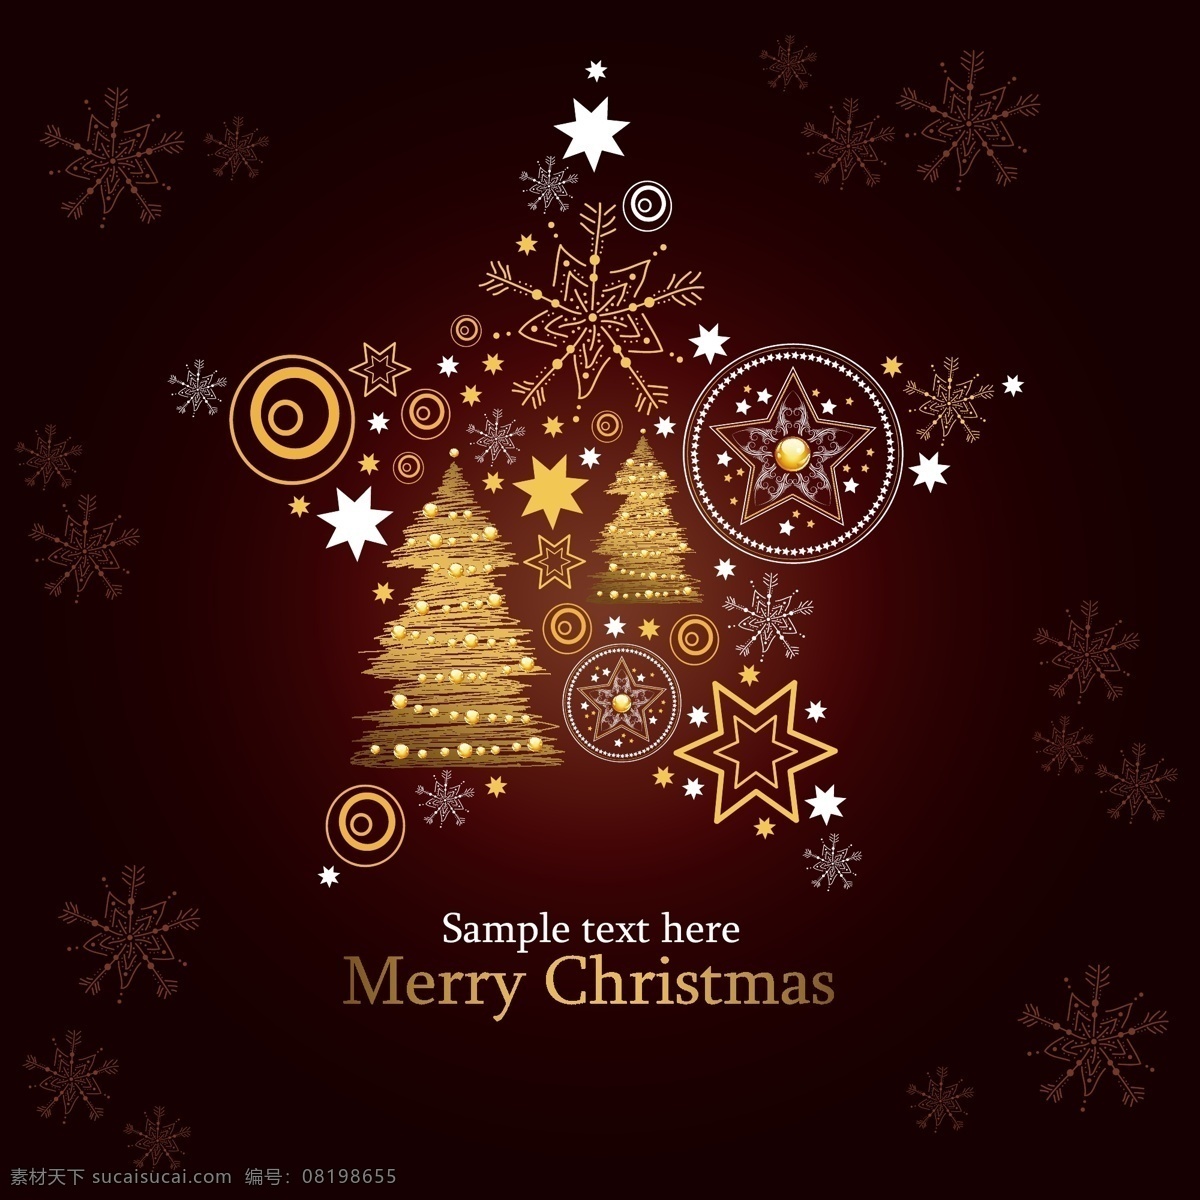 圣诞节 精美 贺卡 矢量 模板 christmas merry 设计稿 圣诞树 图案 雪花 五角星 圆圈 节日大全 源文件 节日素材